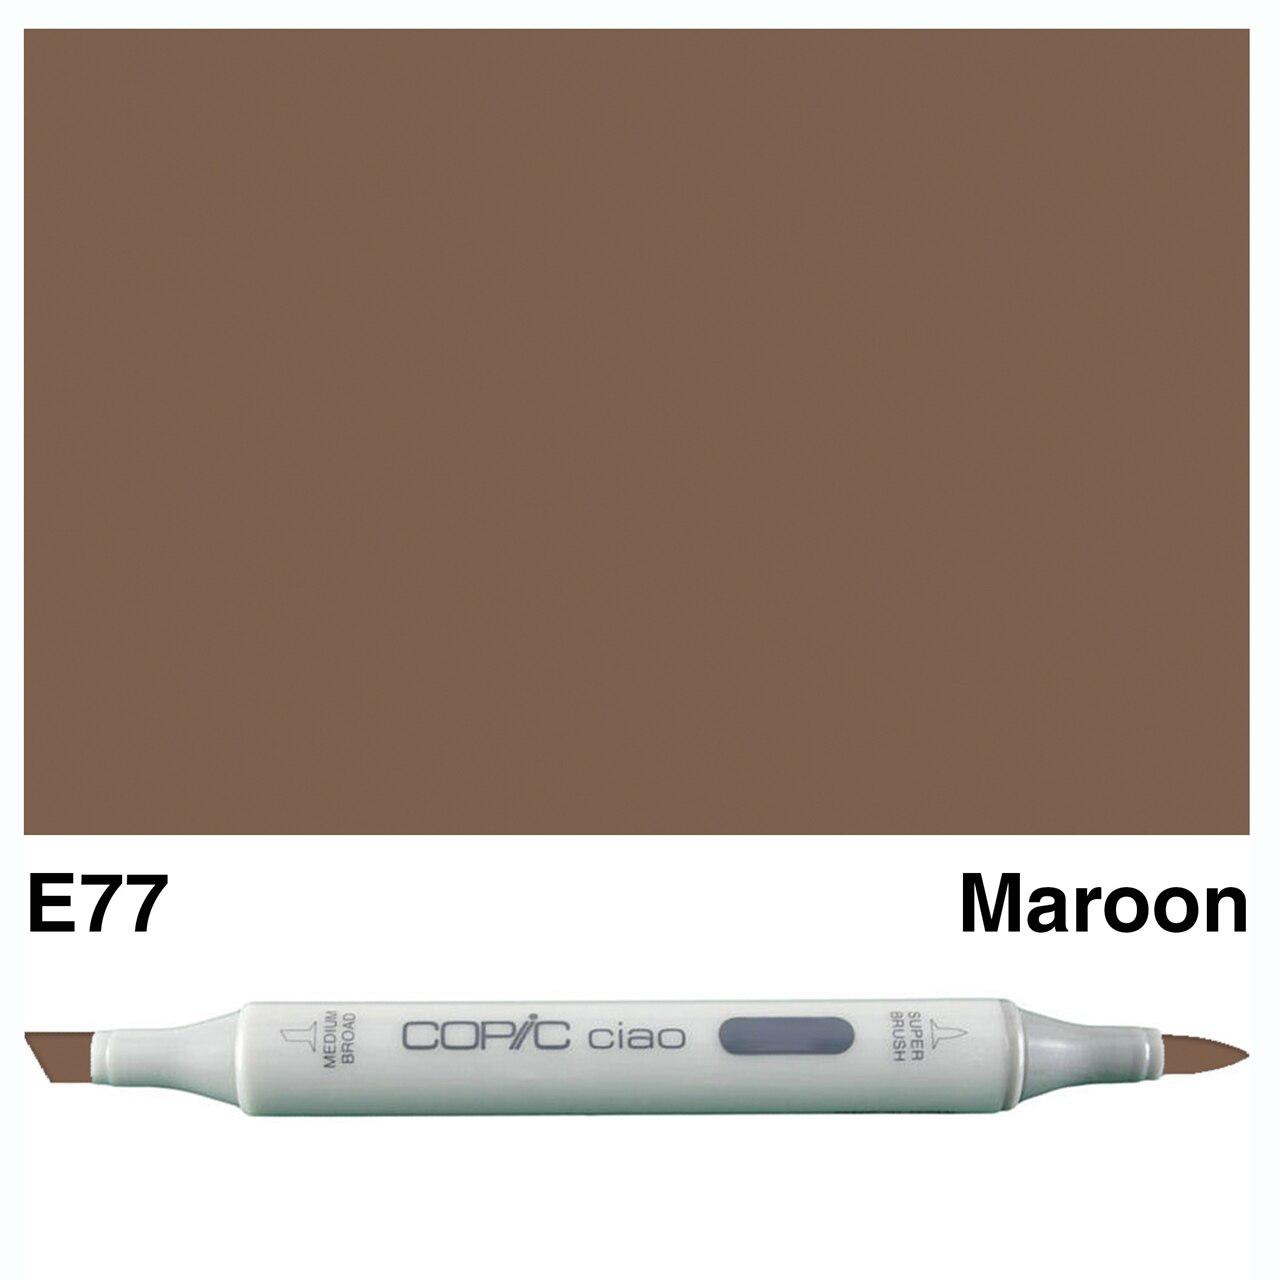 Copic - Ciao Marker - Maroon - E77-ScrapbookPal